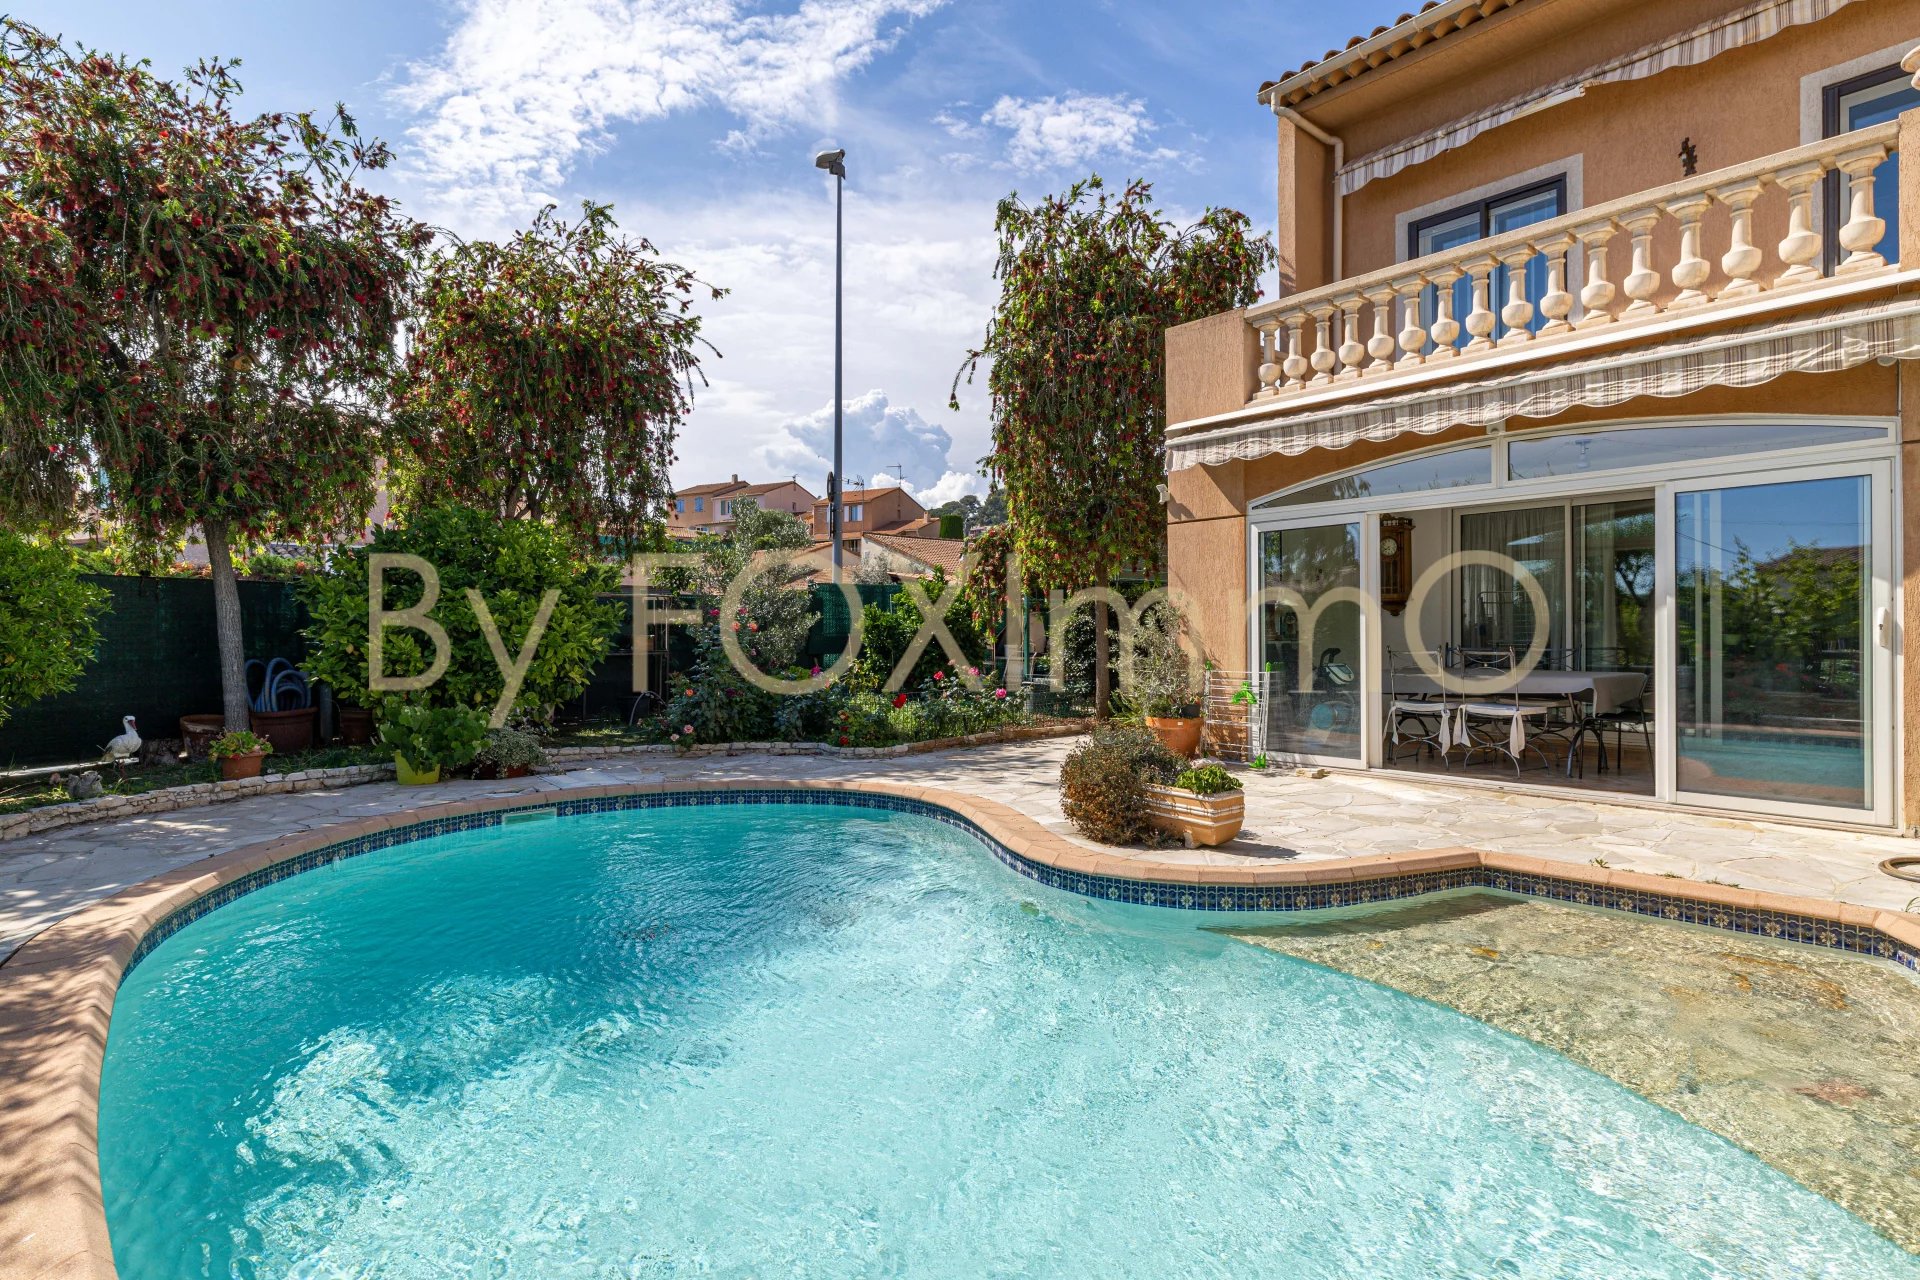 In vendita in Costa Azzurra, magnifica casa di 6 locali con piscina, garage, parcheggio e ricovero per camper